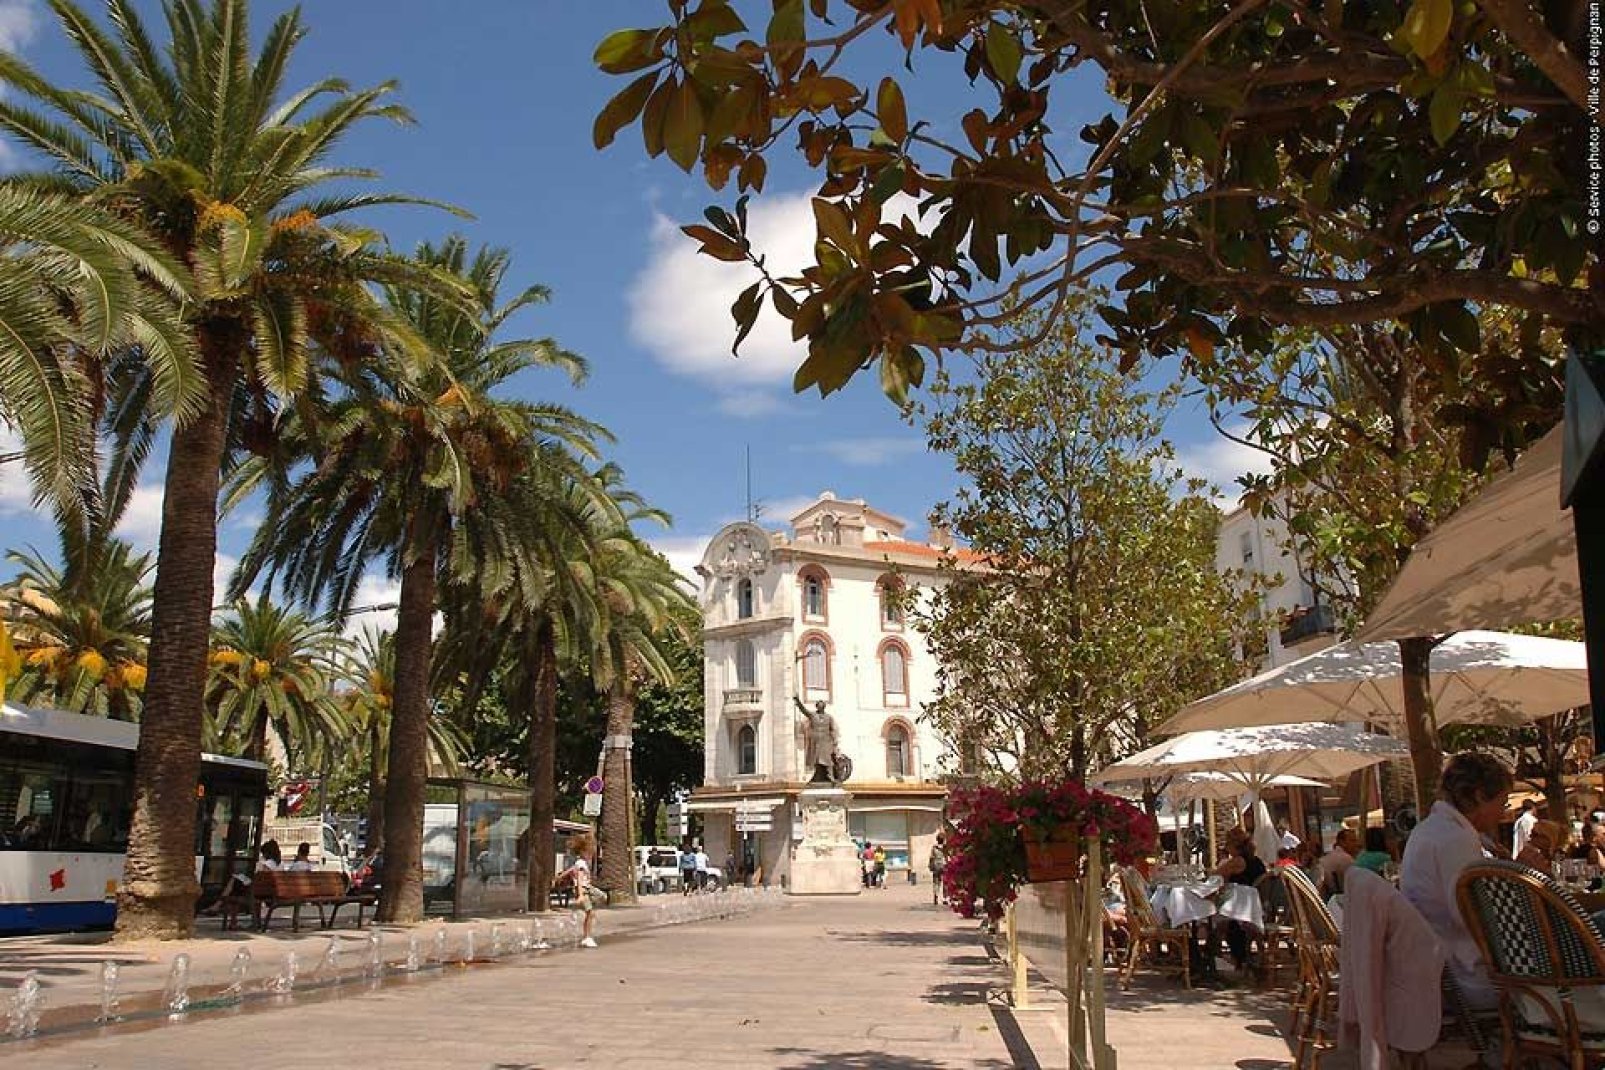 In Perpignan herrscht ein äußerst angenehmes Ambiente mit zahlreichen Cafés und Terrassen, auf denen man sich wunderbar entspannen kann.